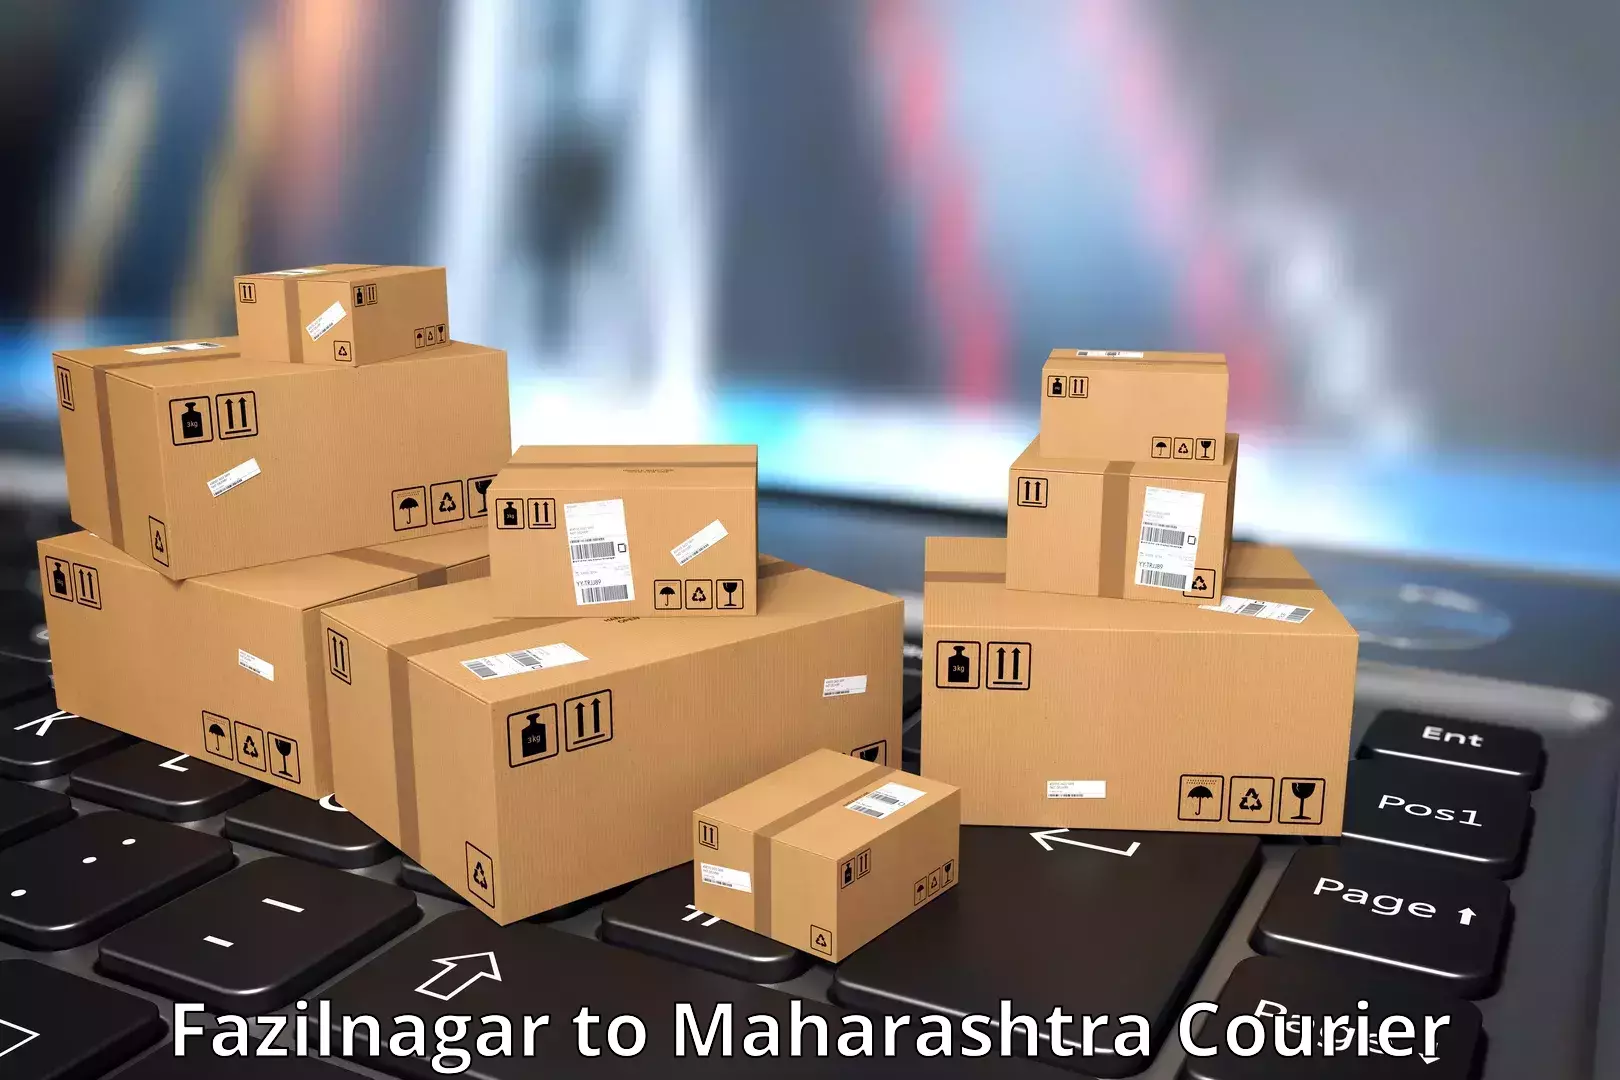 Premium courier solutions Fazilnagar to Maharashtra